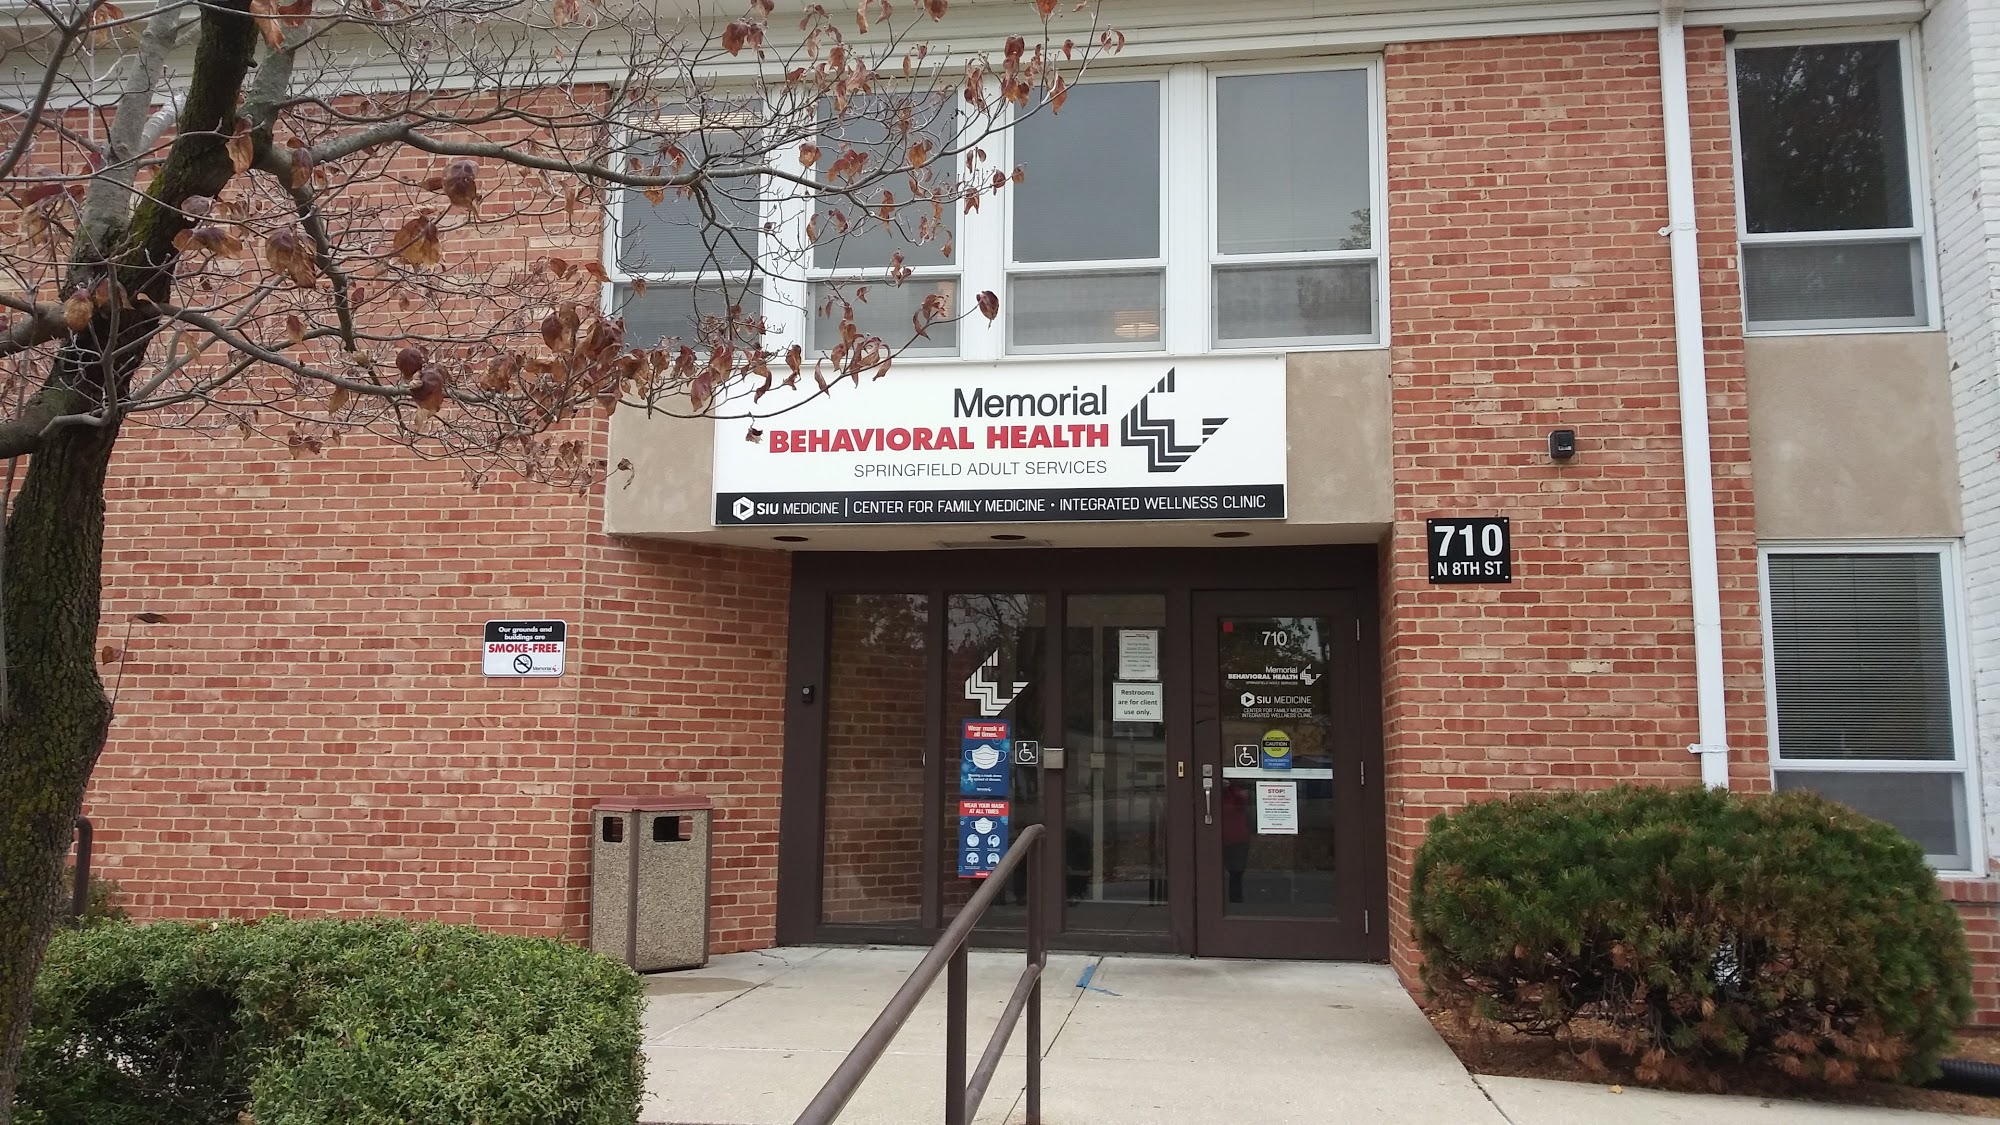 Memorial Behavioral Health Center in Springfield